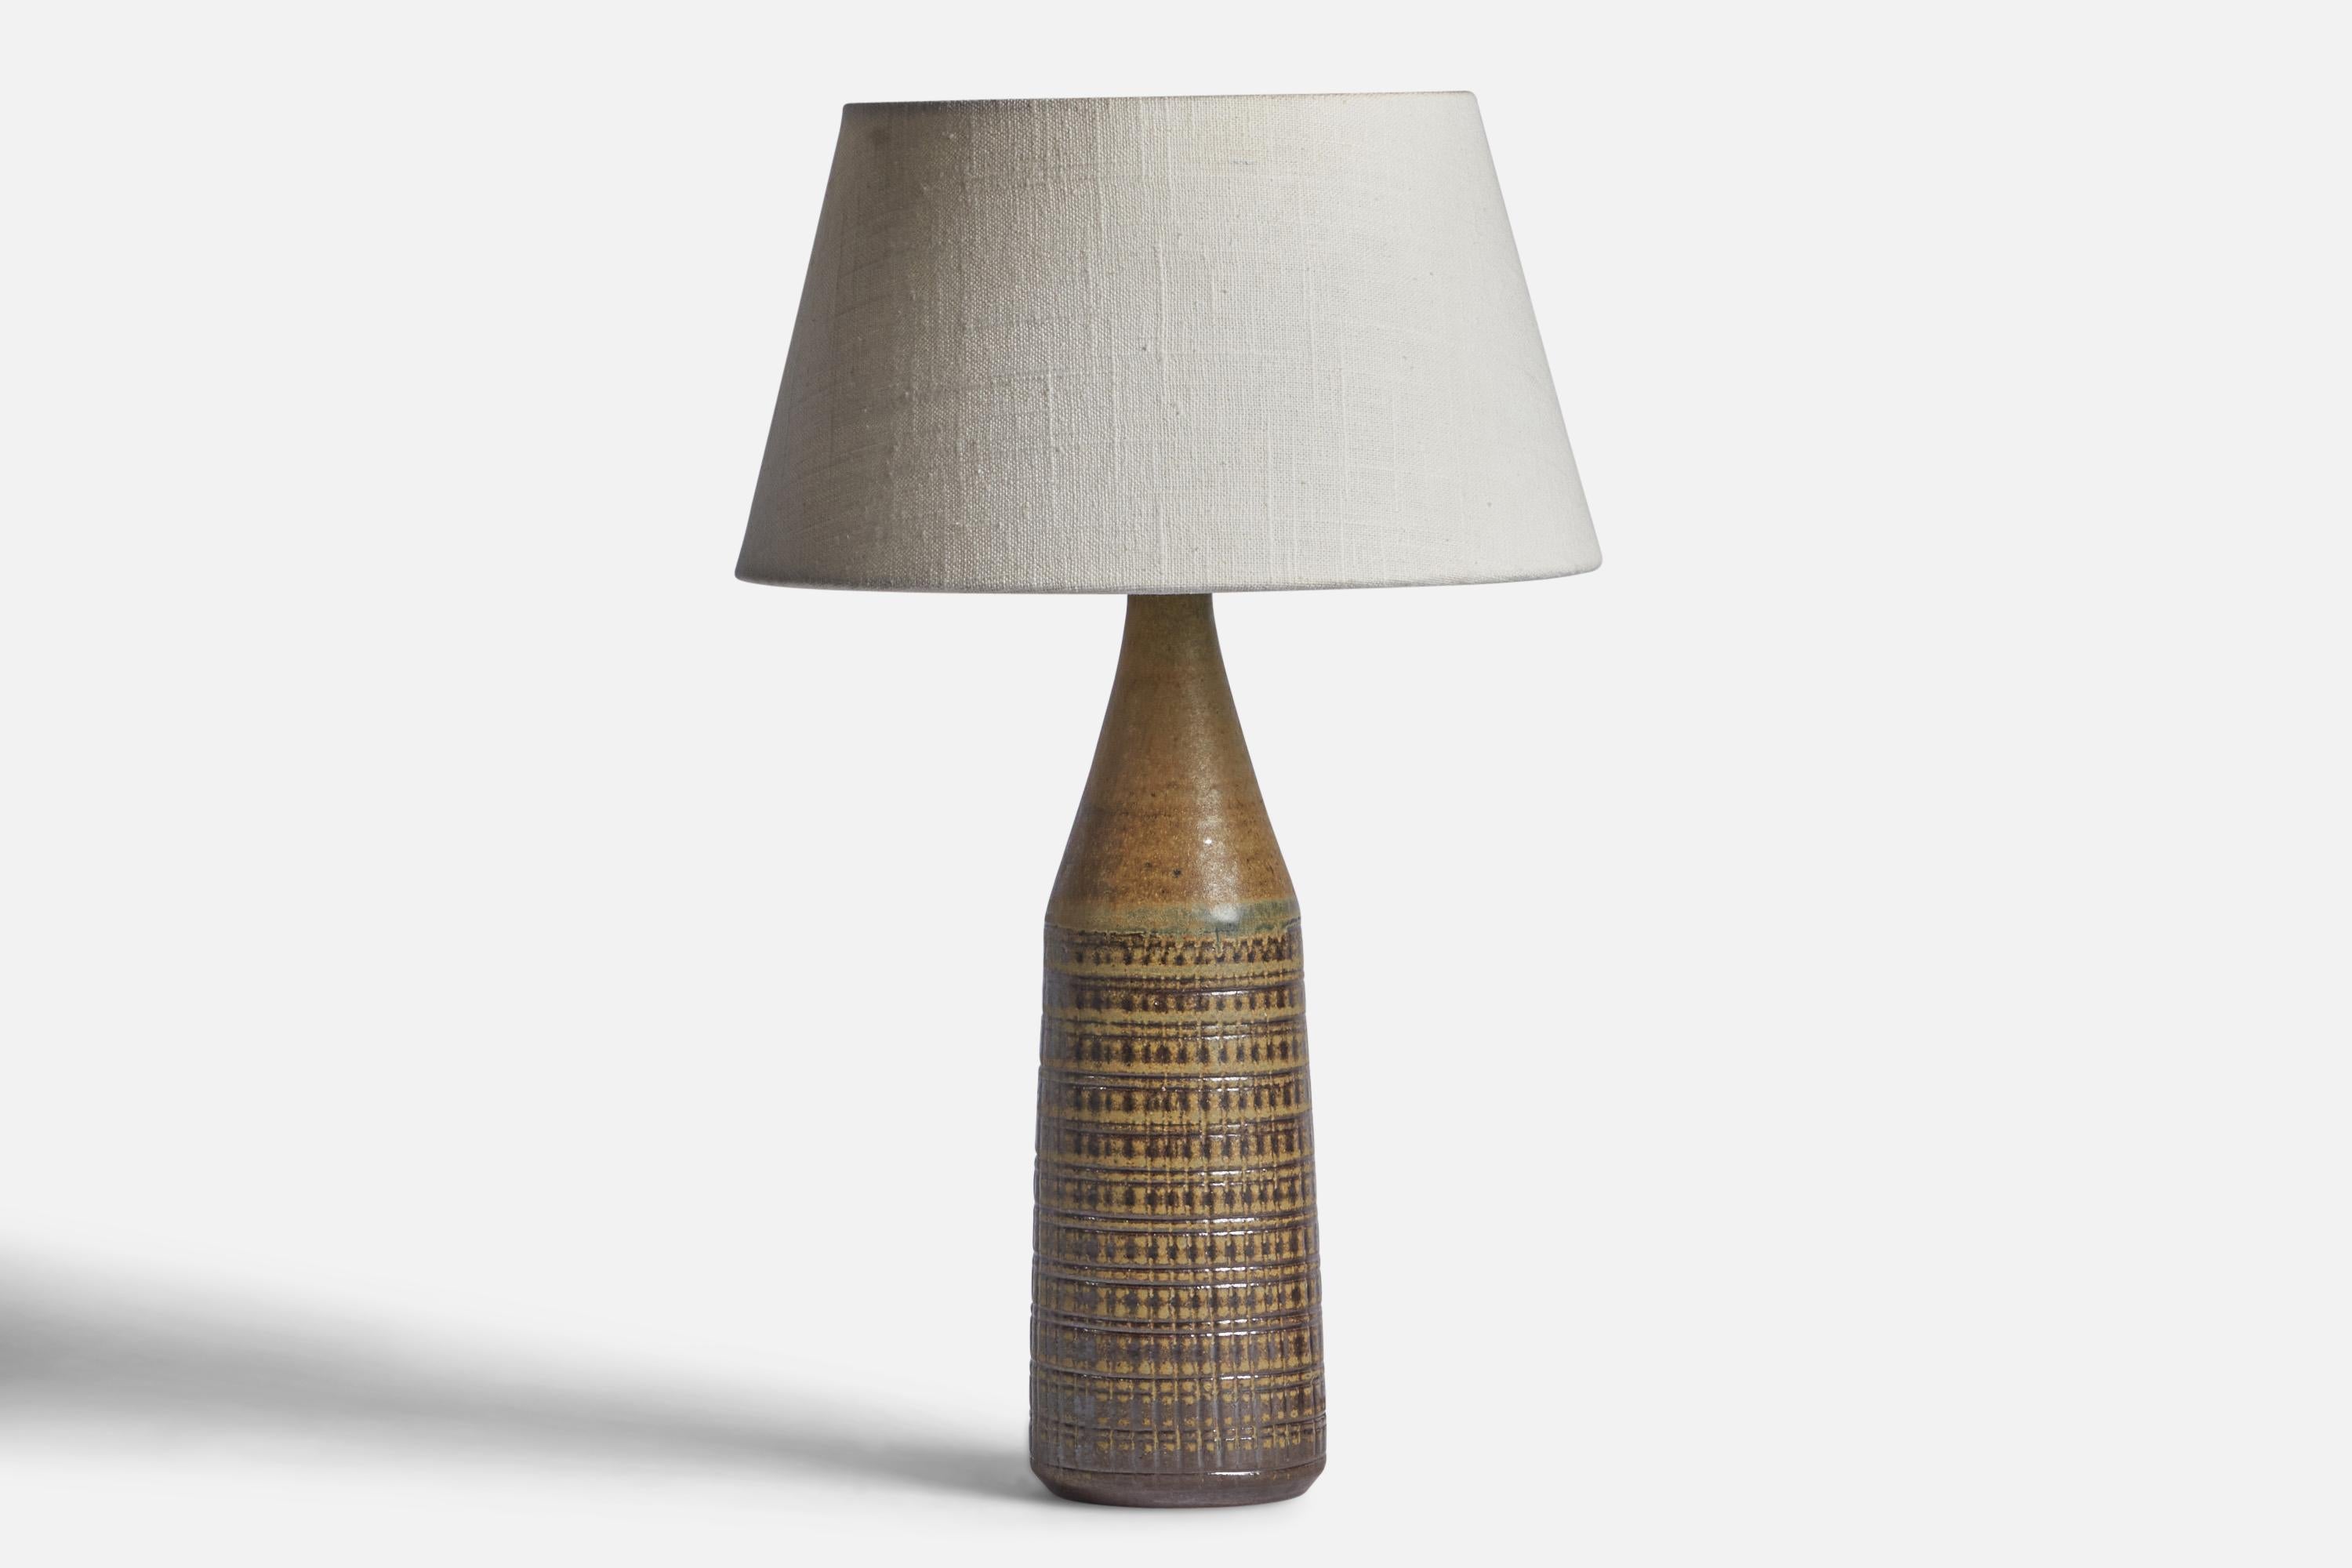 Lampe de table en grès émaillé brun et vert, conçue et produite par Wallåkra, Suède, vers les années 1950.

Dimensions de la lampe (pouces) : 13.25